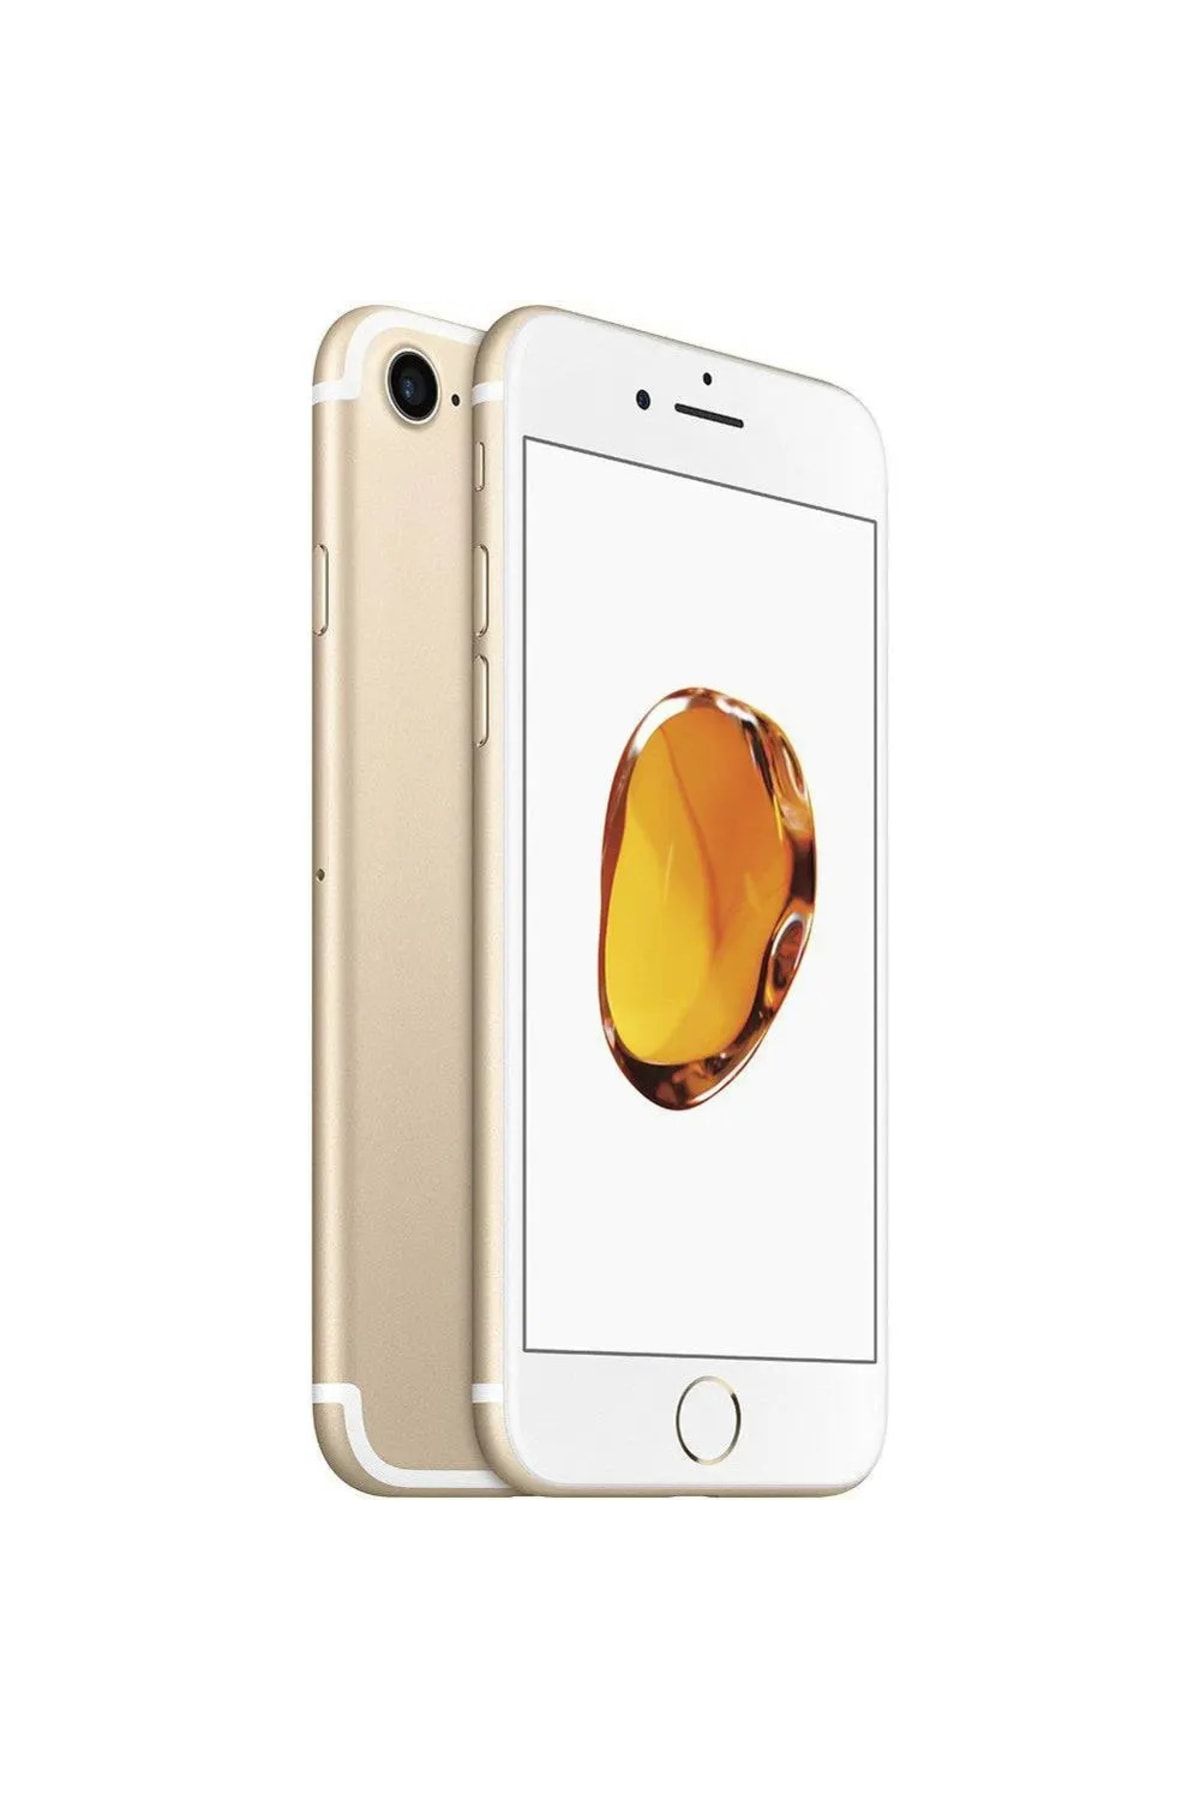 Apple Yenilenmiş iPhone 7 128 GB Altın Cep Telefonu (12 Ay Garantili) - B Kalite